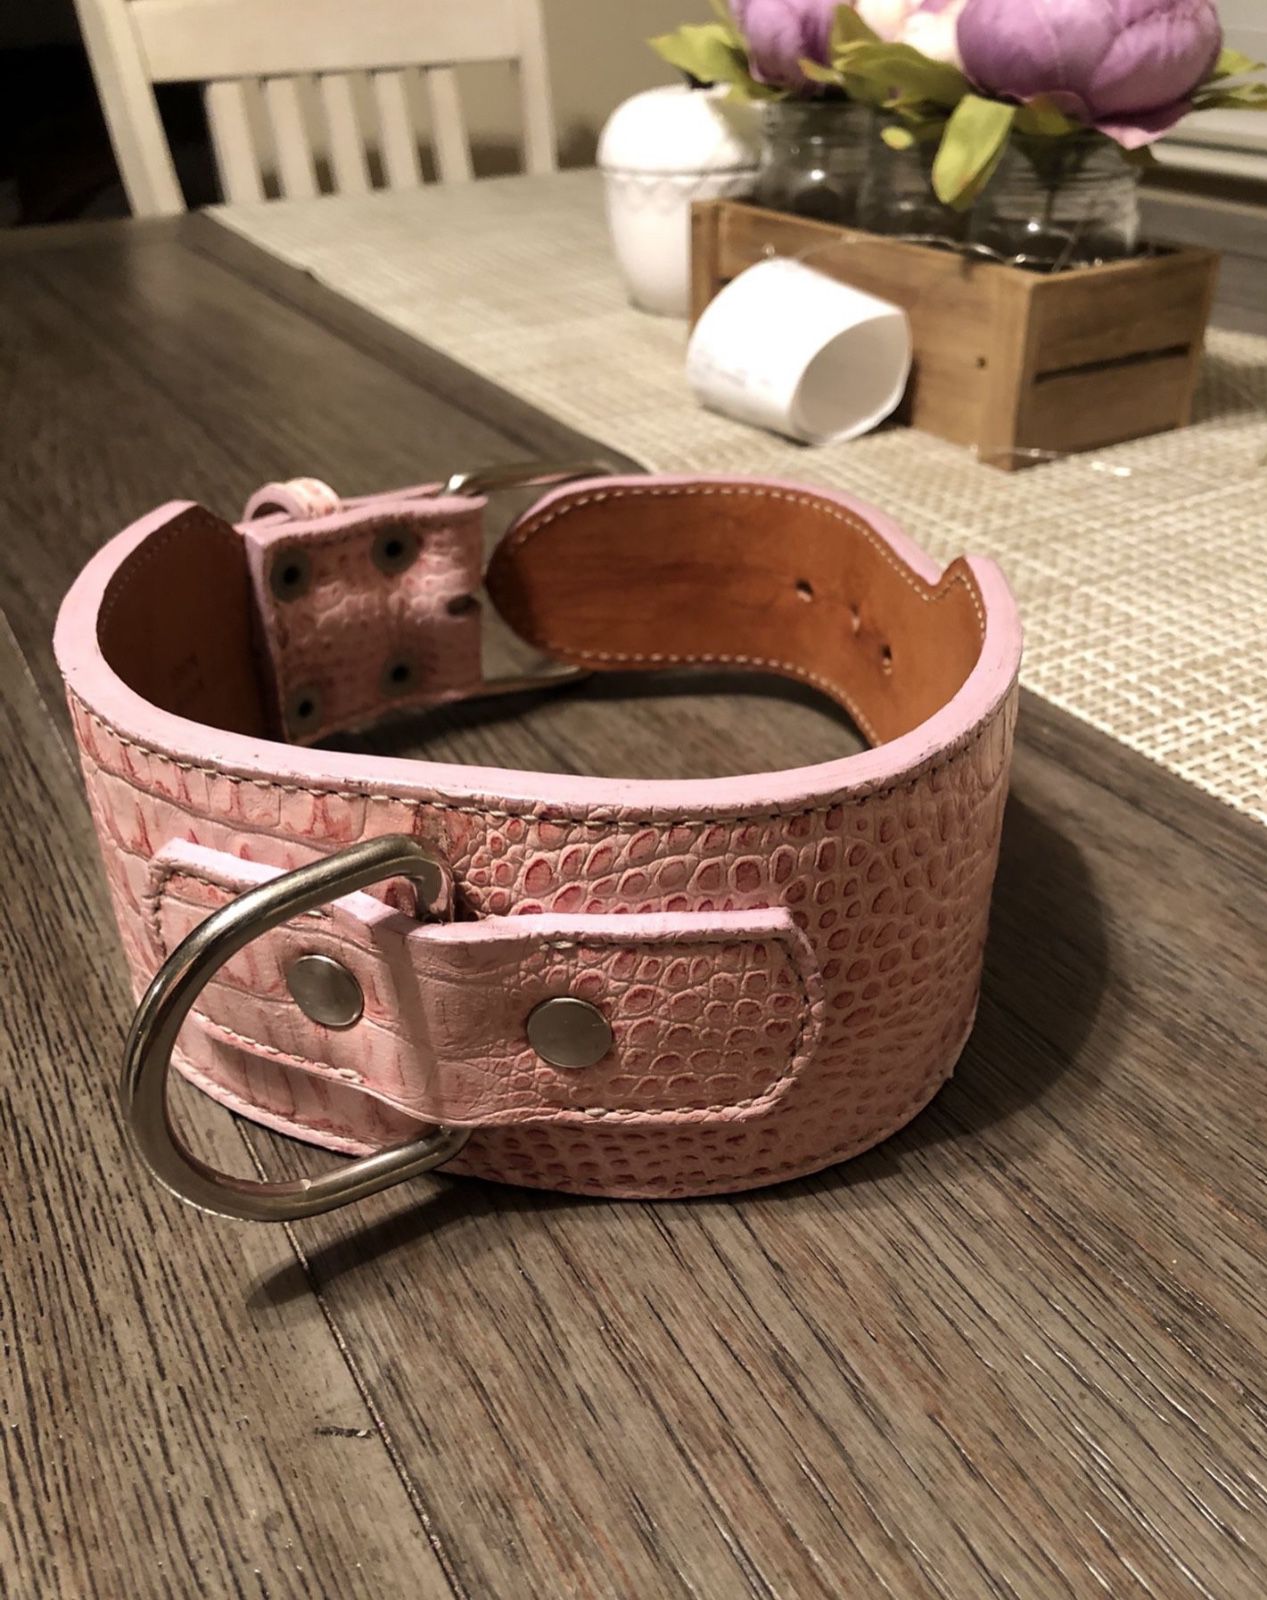 Pink Gator Skin Dog Collar And Leash